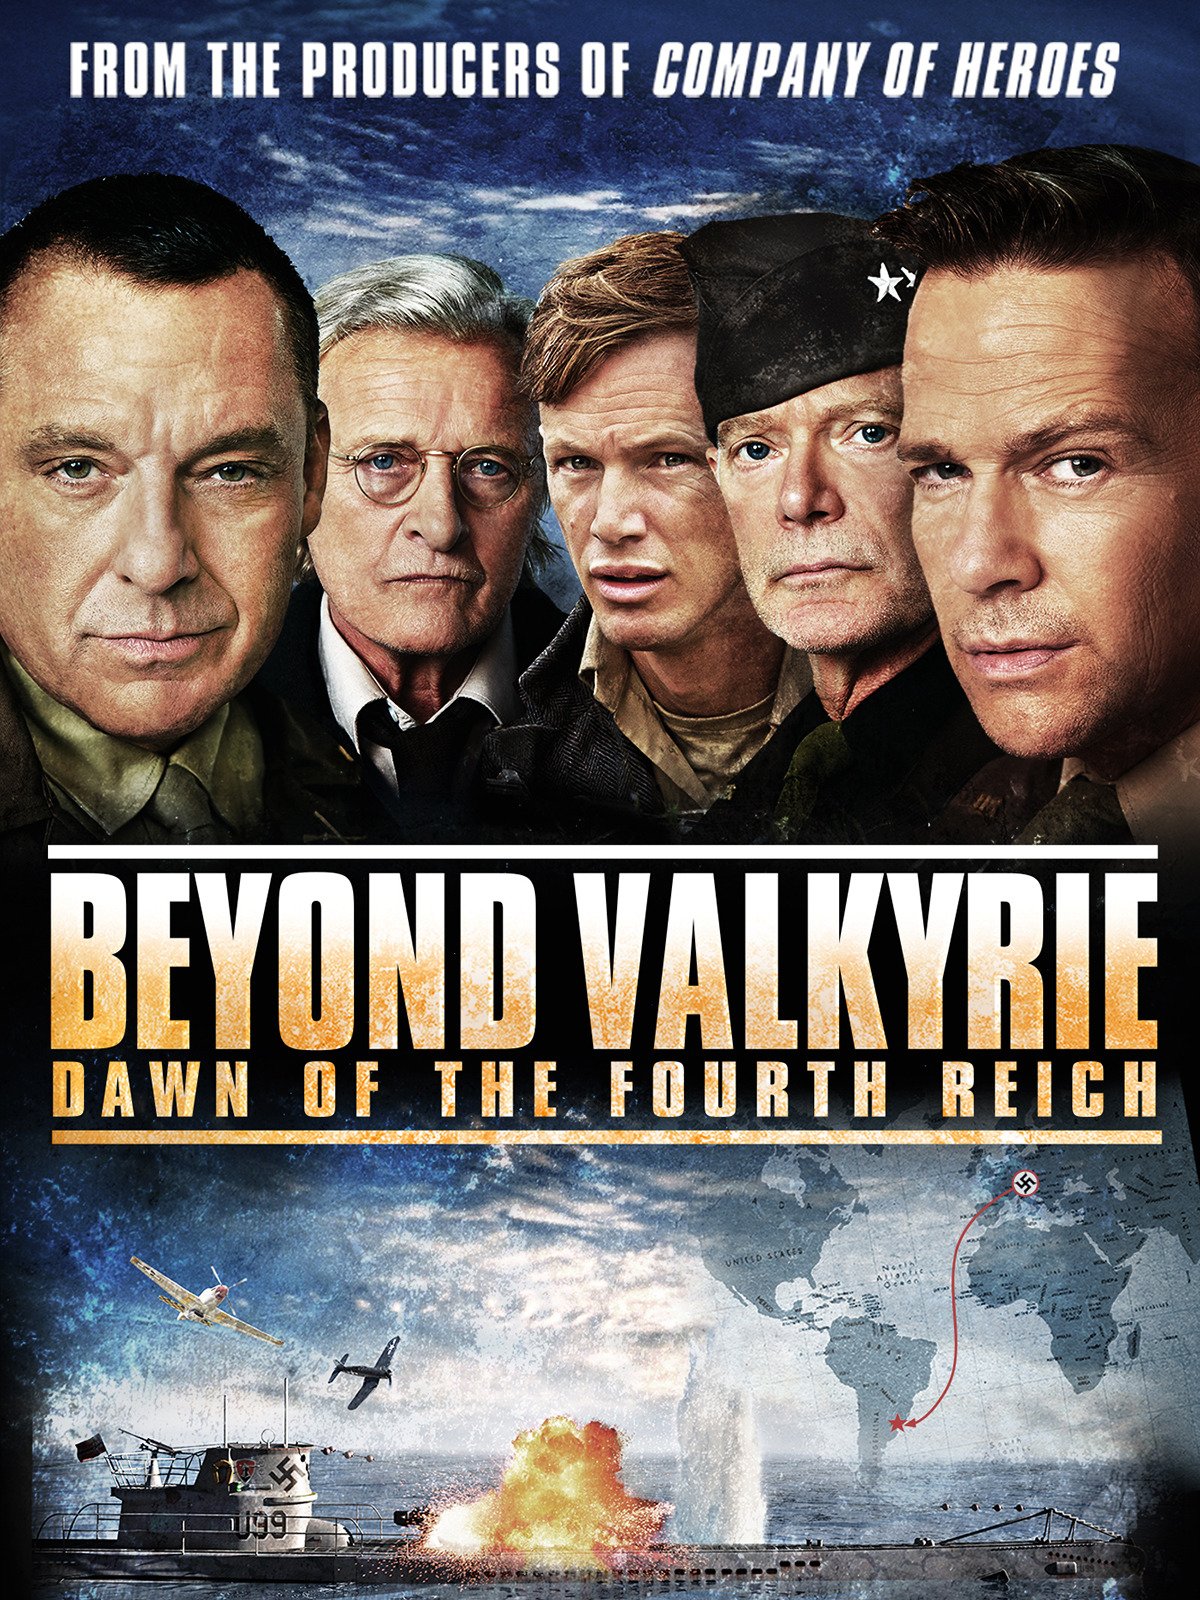 Beyond Valkyrie Dawn of the Fourth Reich (2016) ปฏิบัติการฝ่าสมรภูมิอินทรีเหล็ก - ดูหนังออนไลน